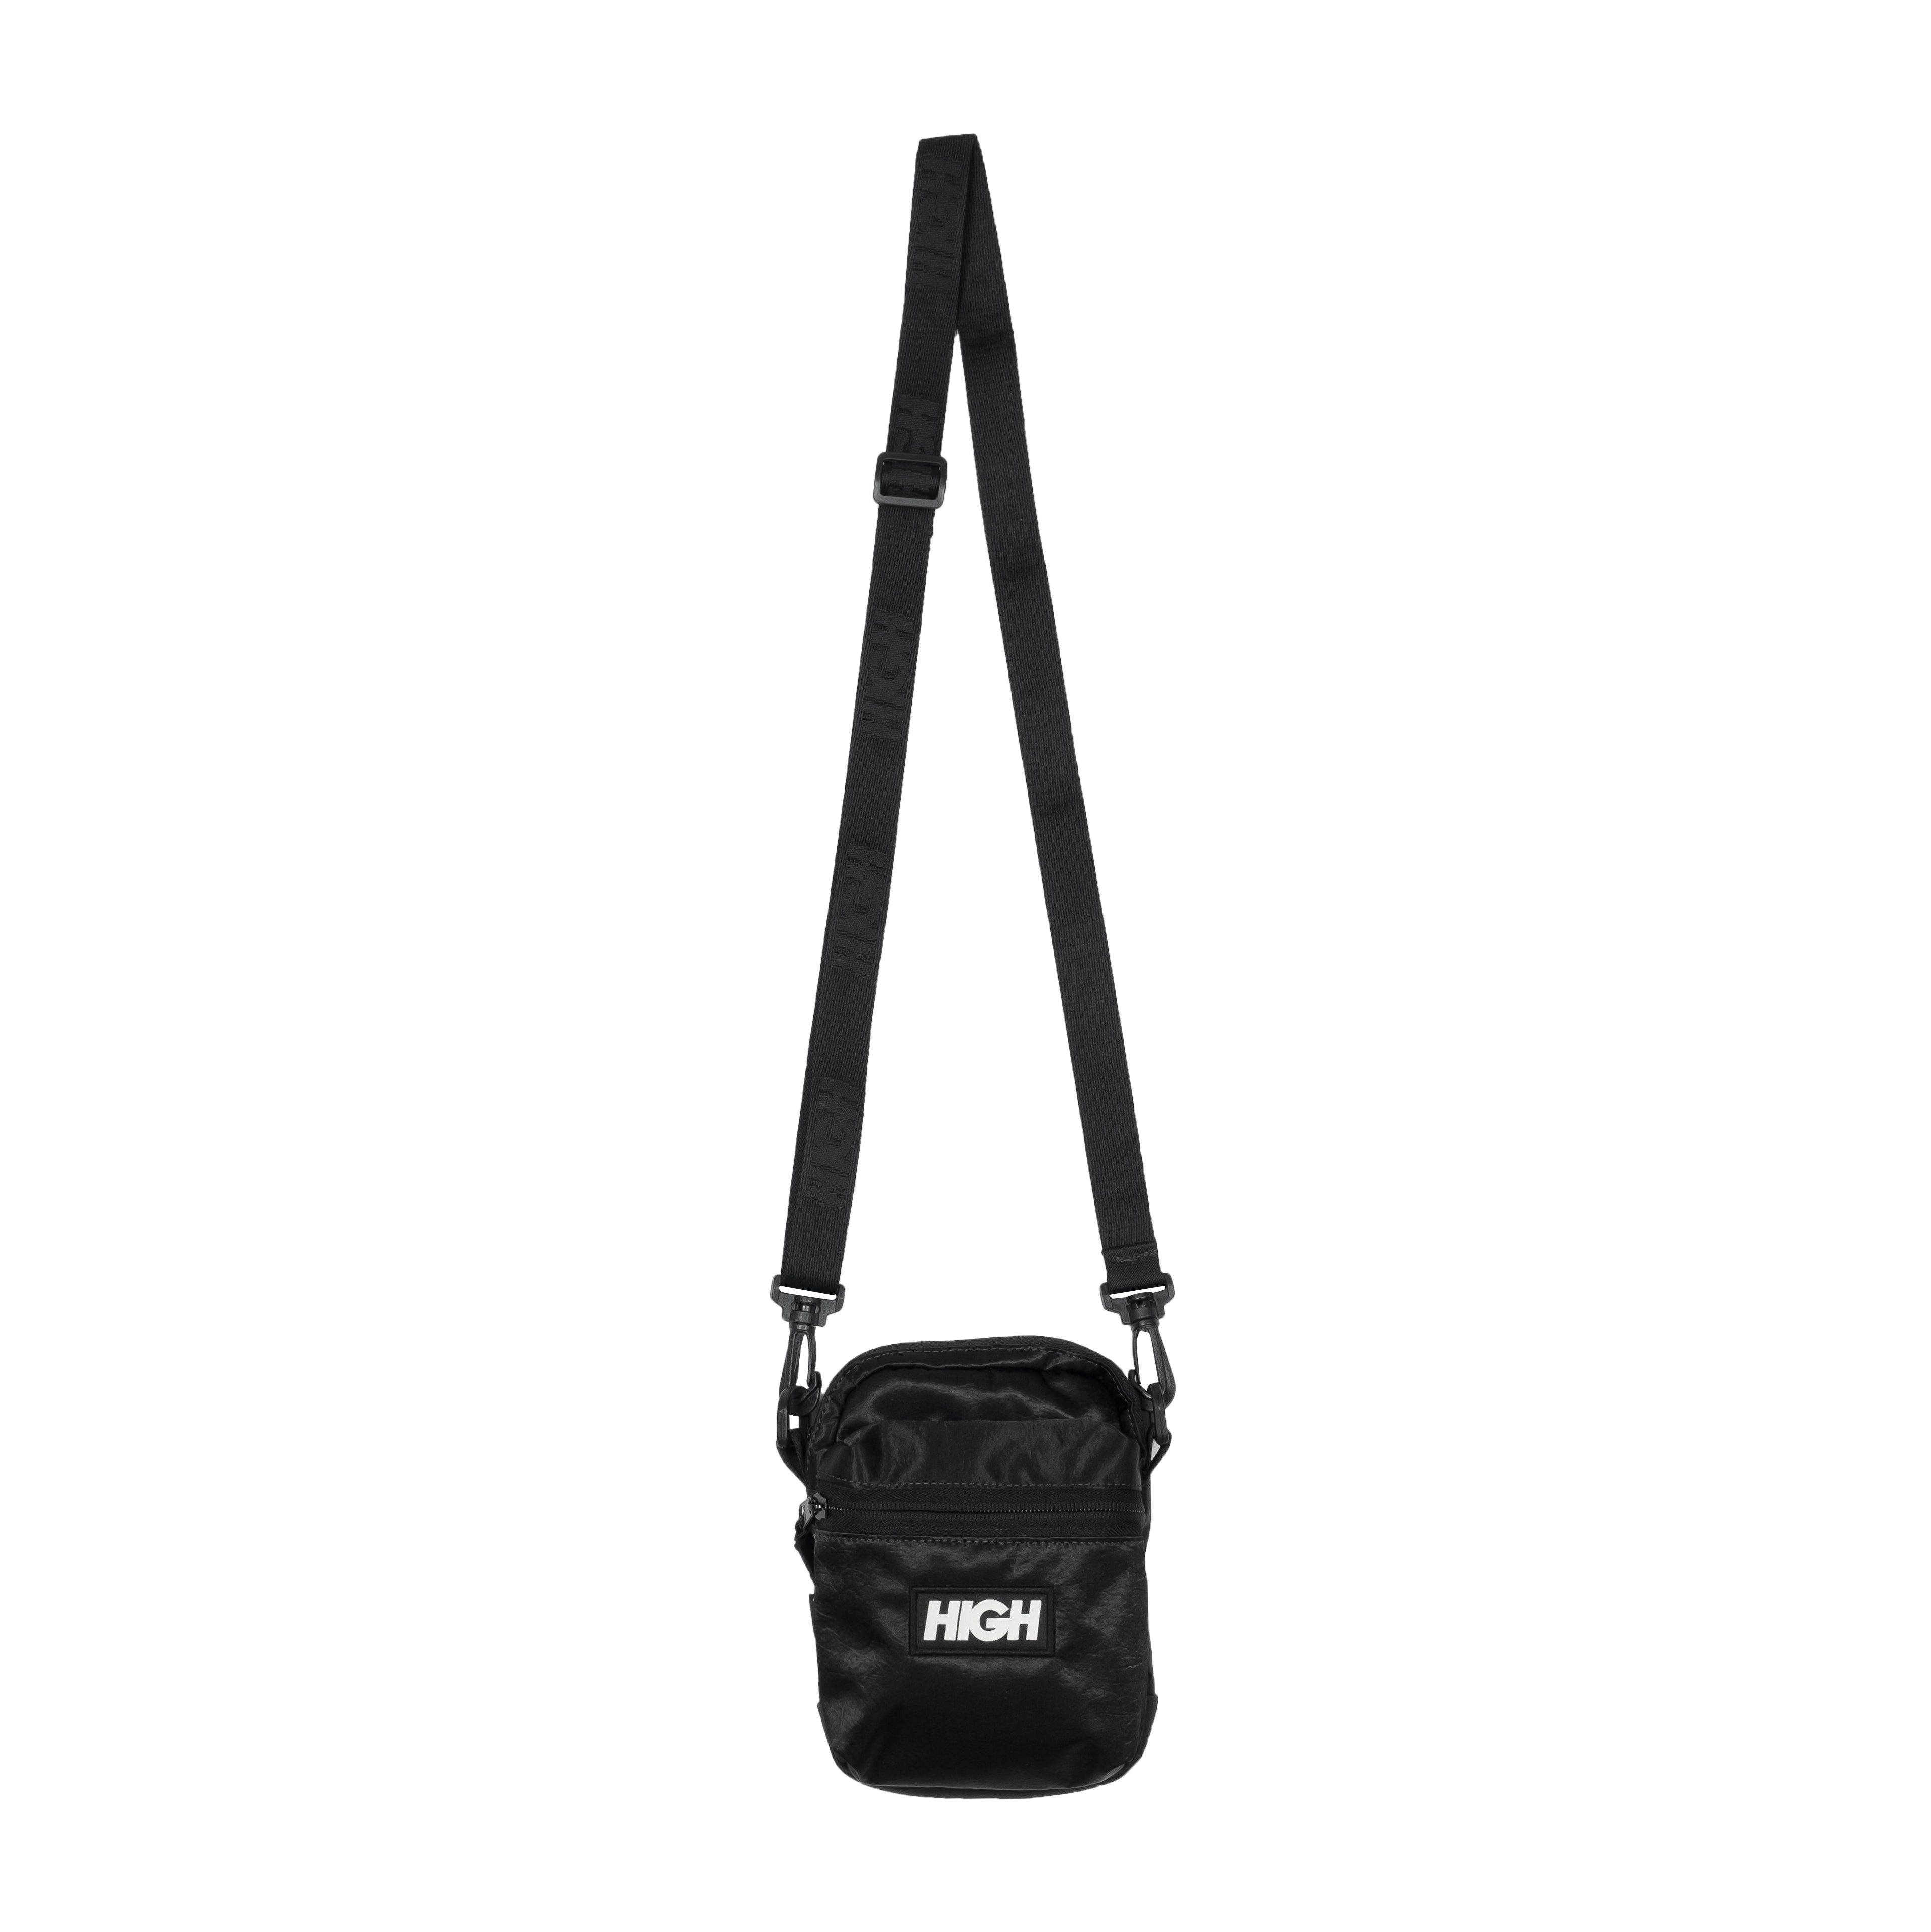 HIGH - Irisdescent Shoulder Bag "Black"